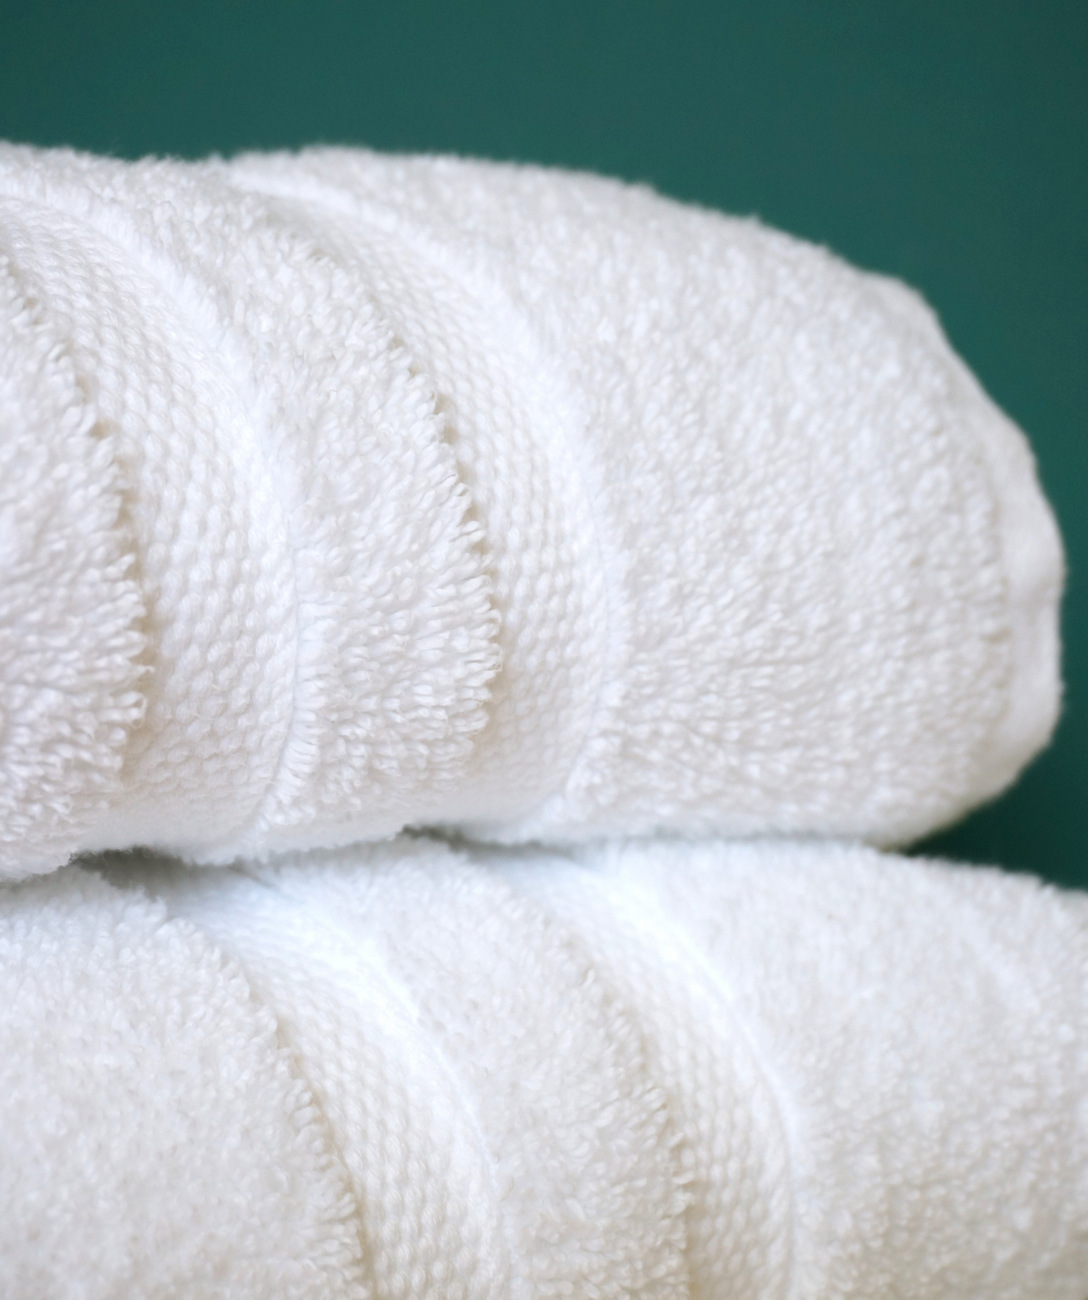 Soft, fluffy towels